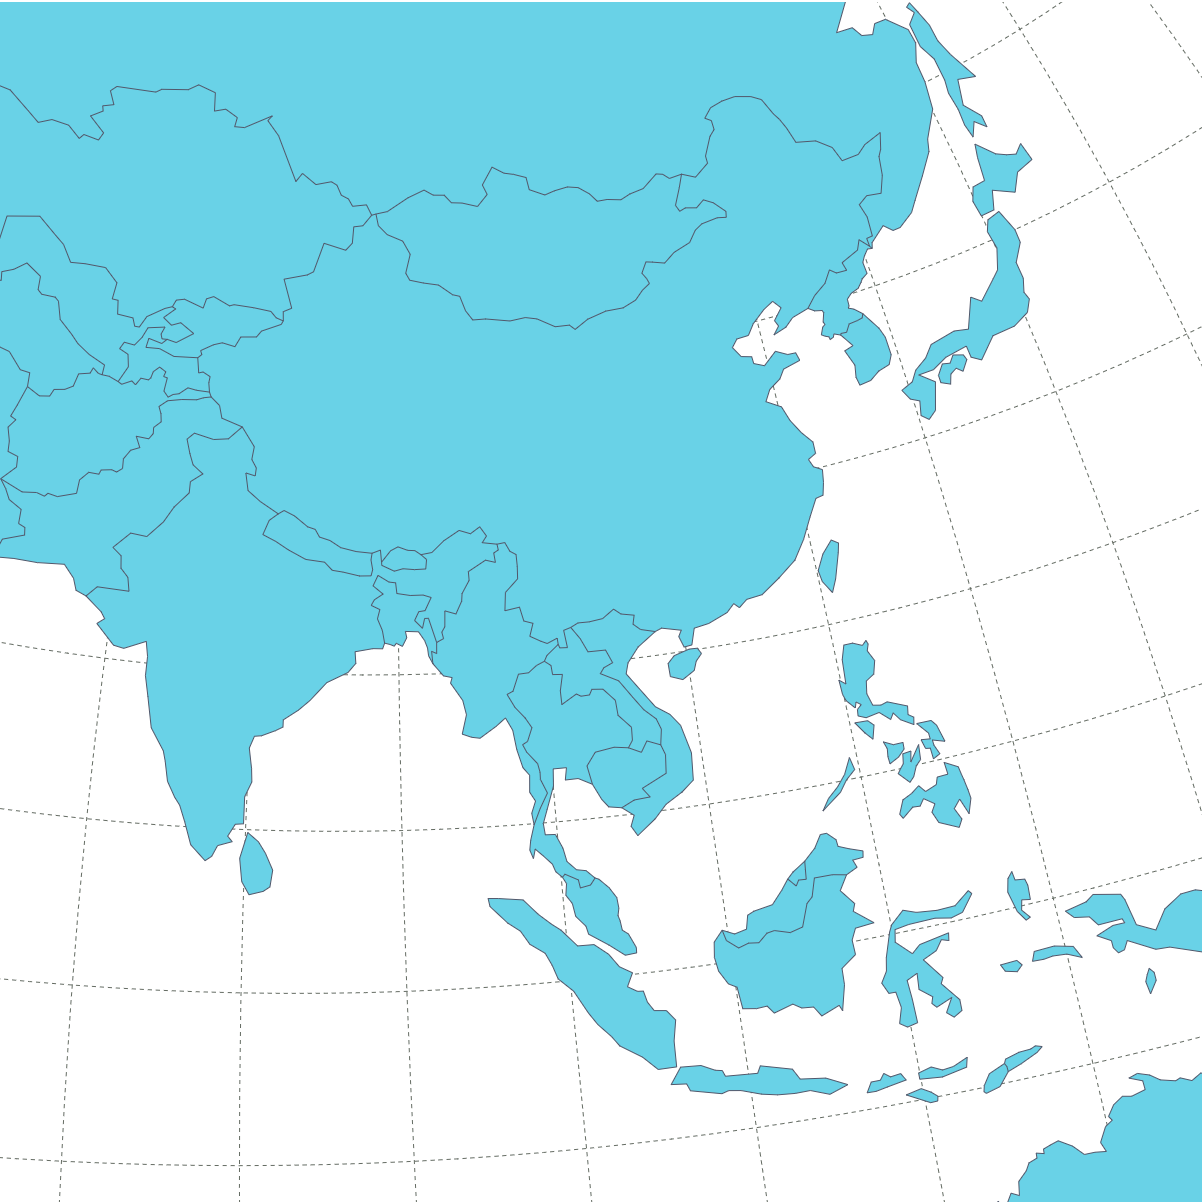 Asia (20+ areas)